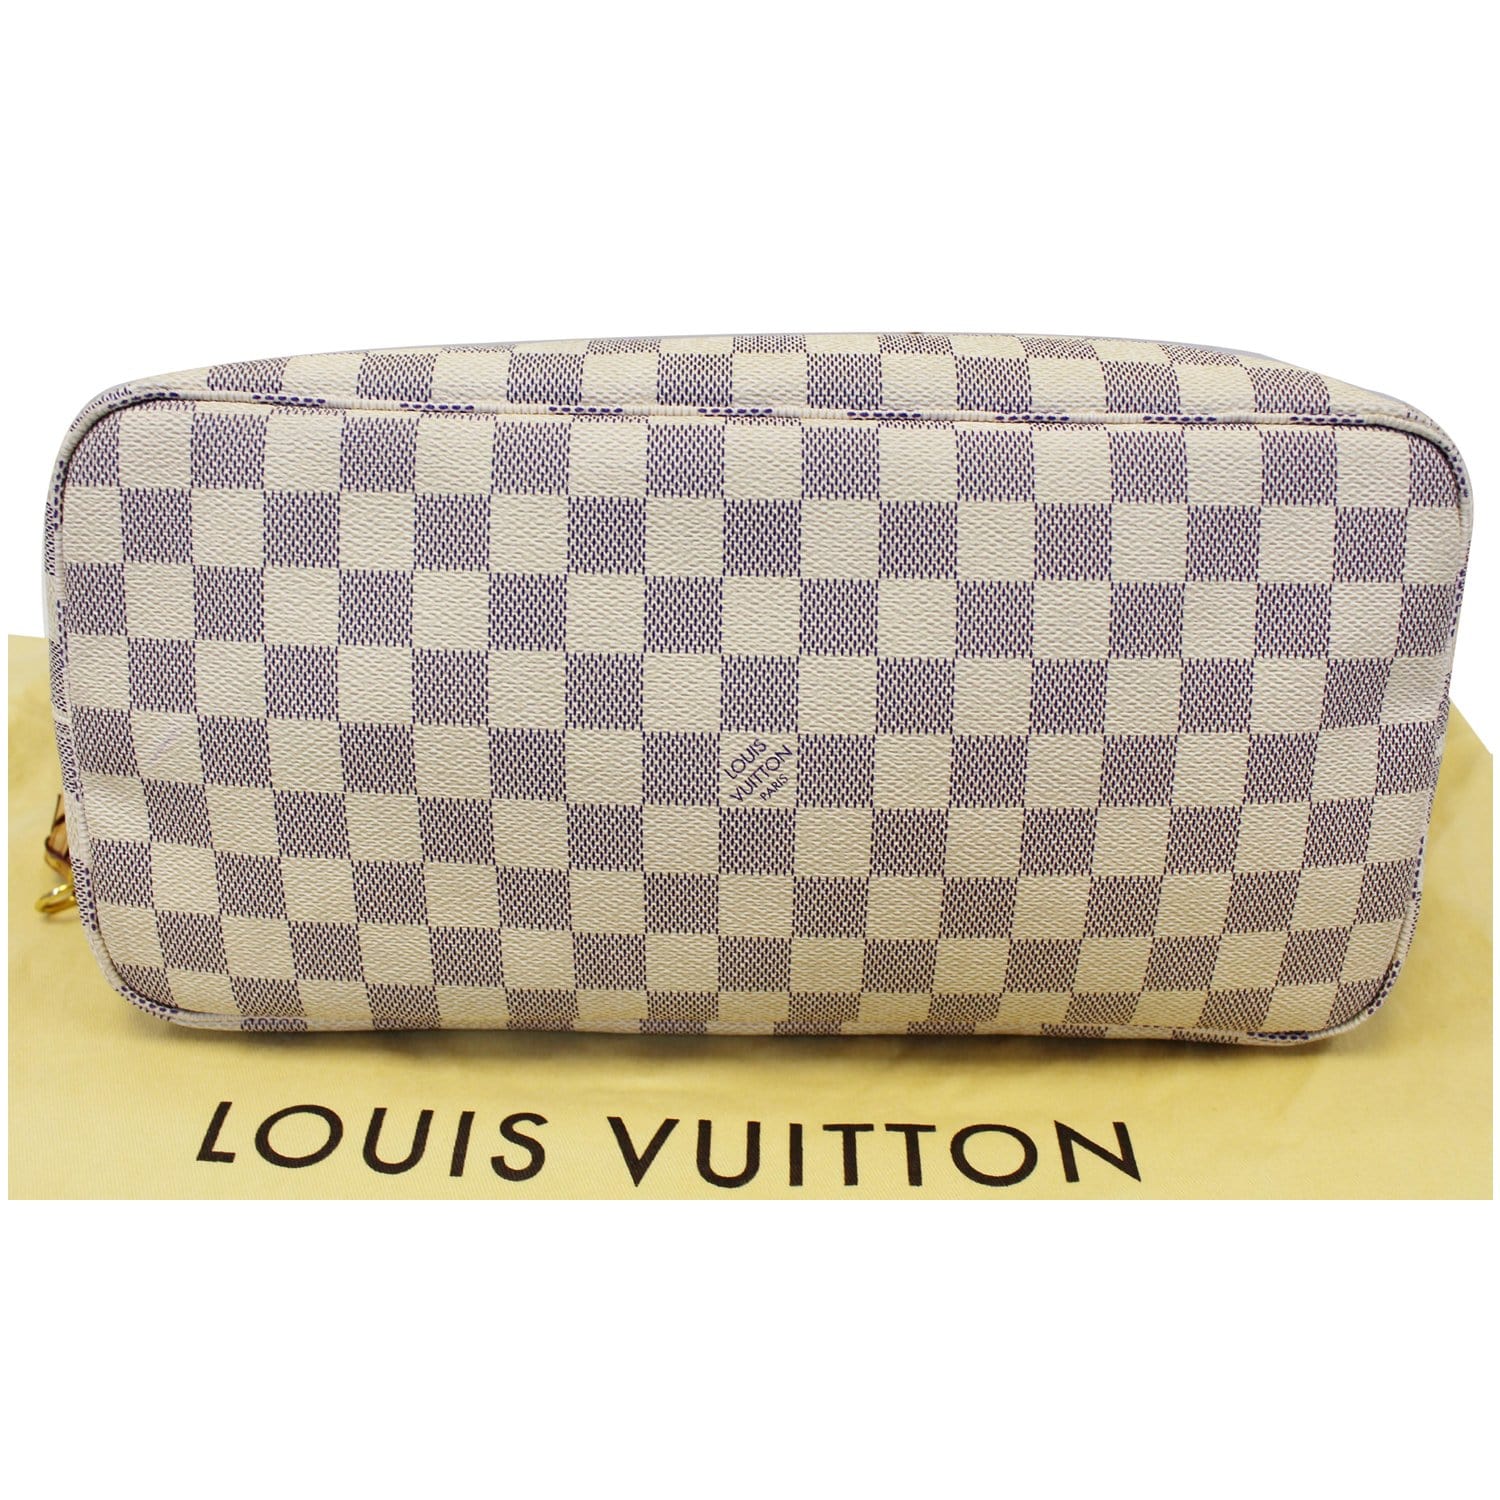 Louis Vuitton Damier Azur Canvas Toiletry Bag 25